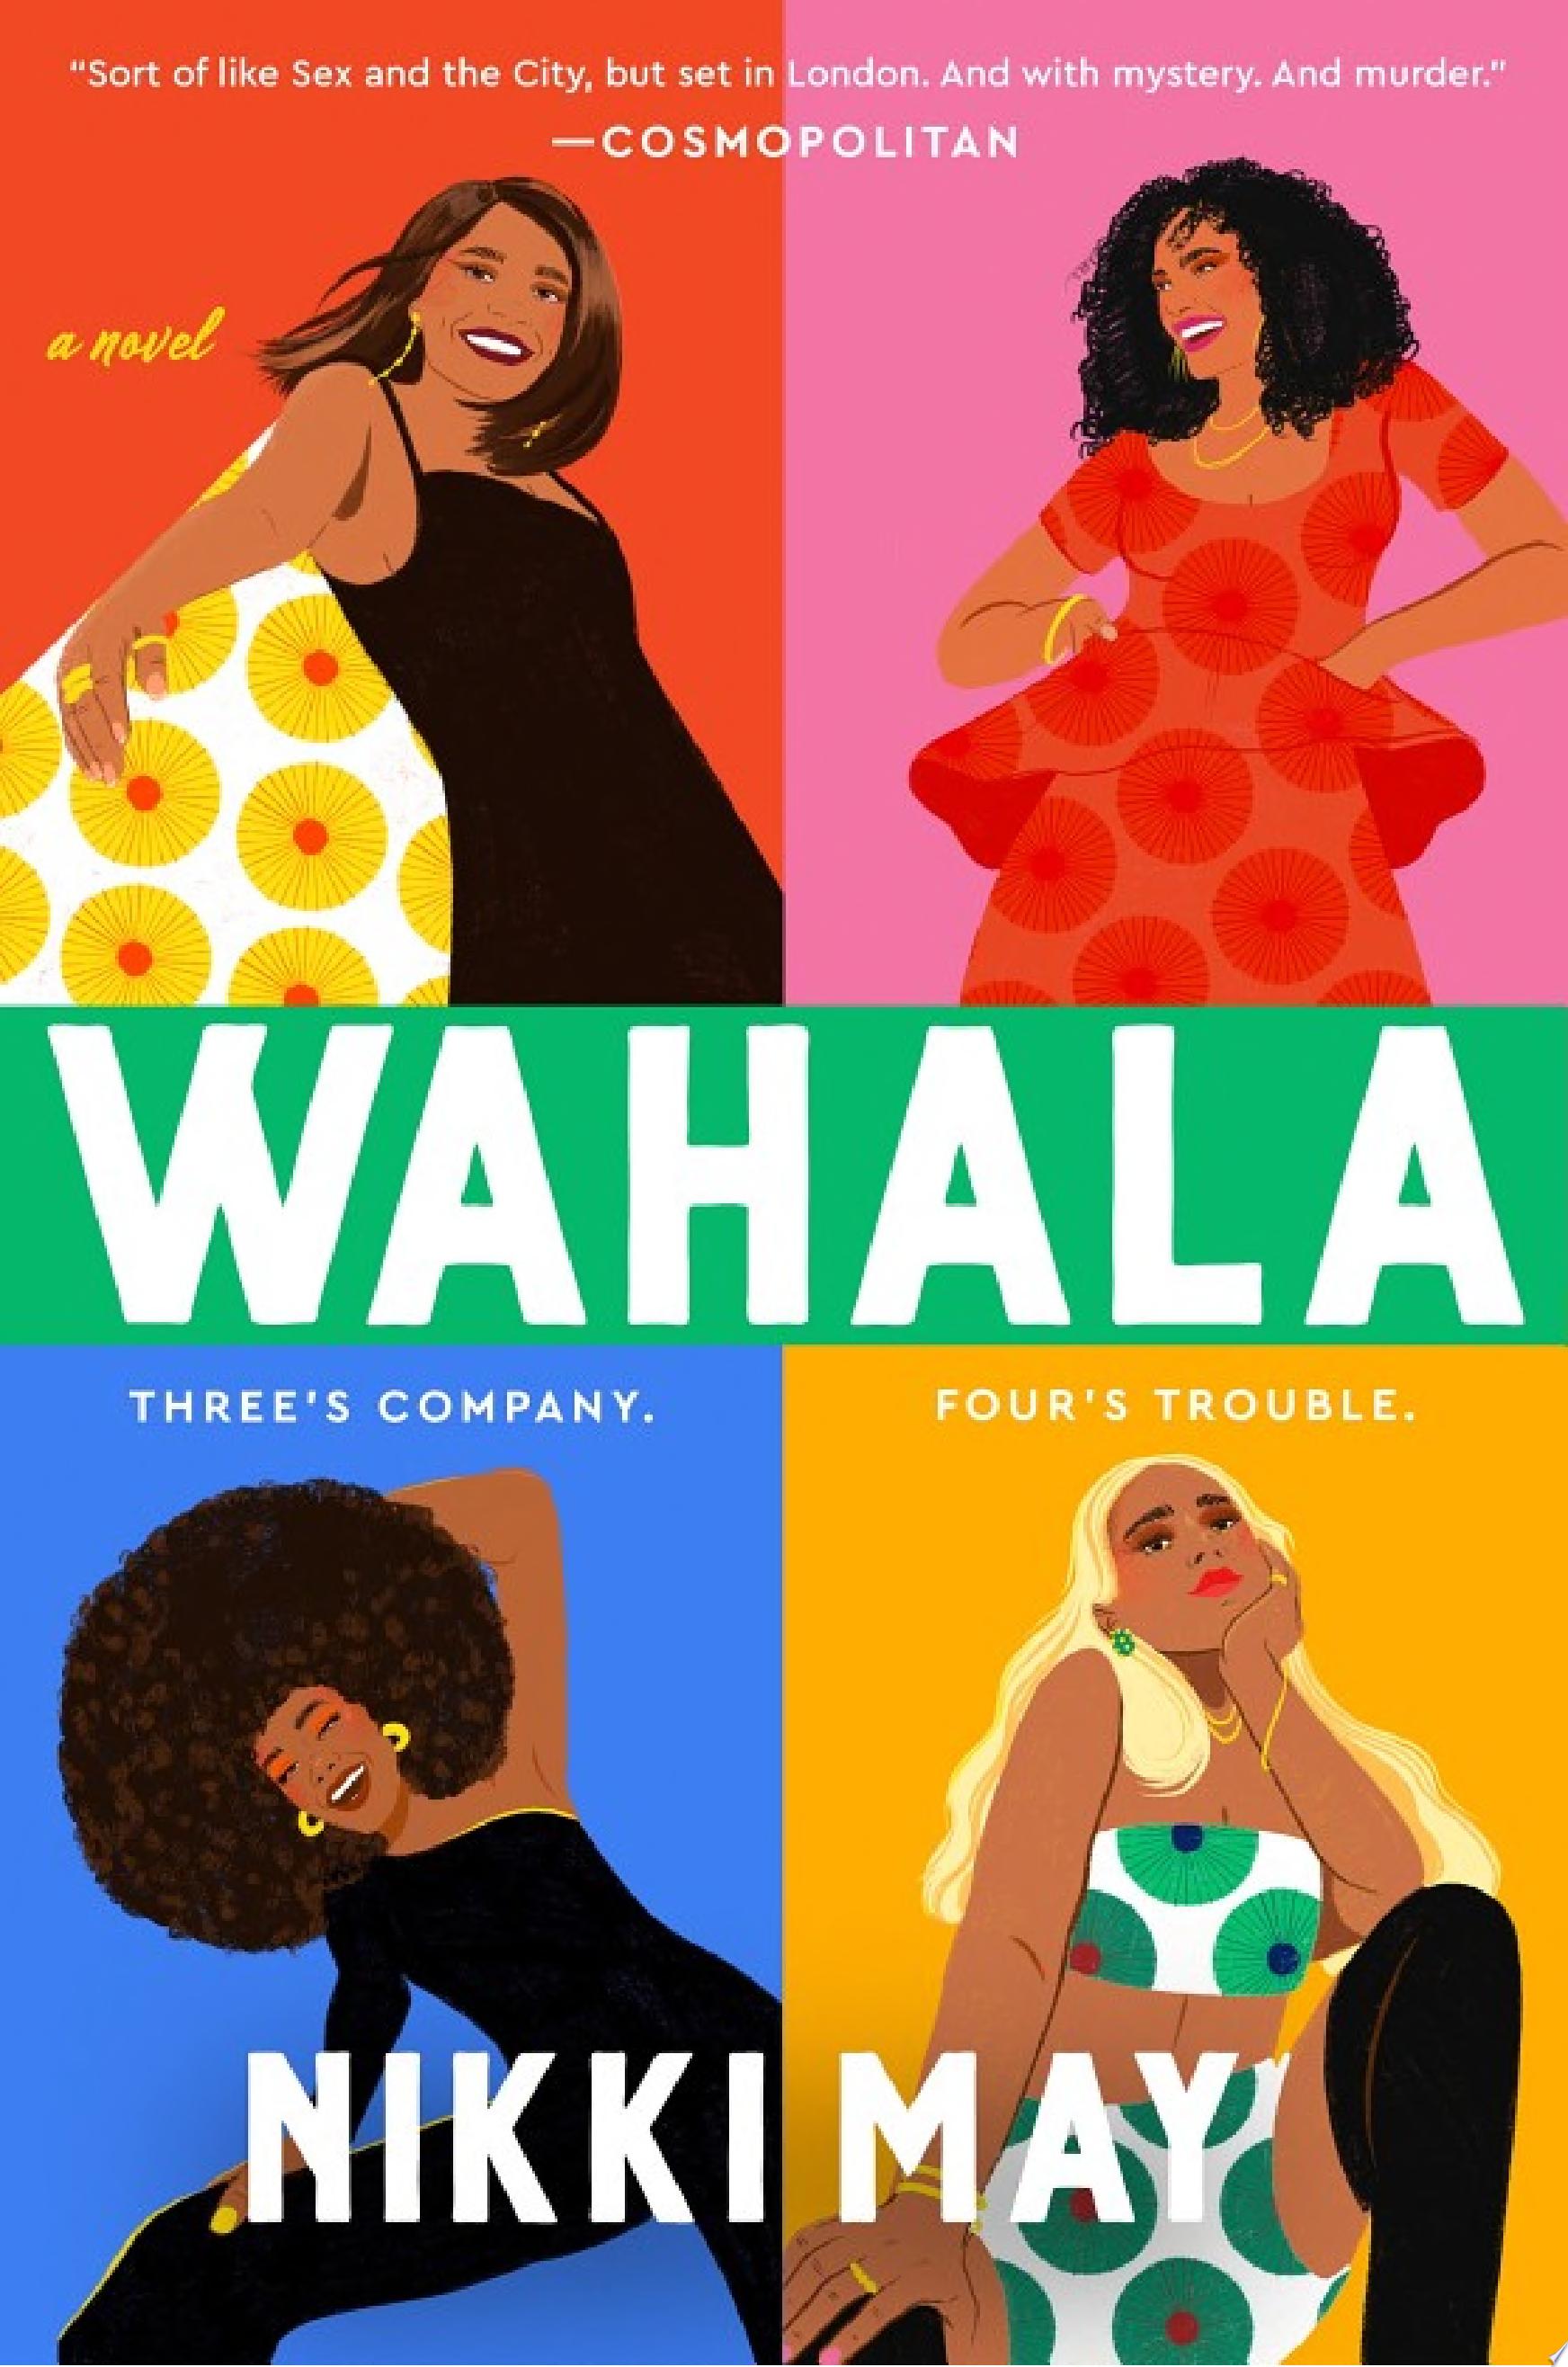 Image for "Wahala"